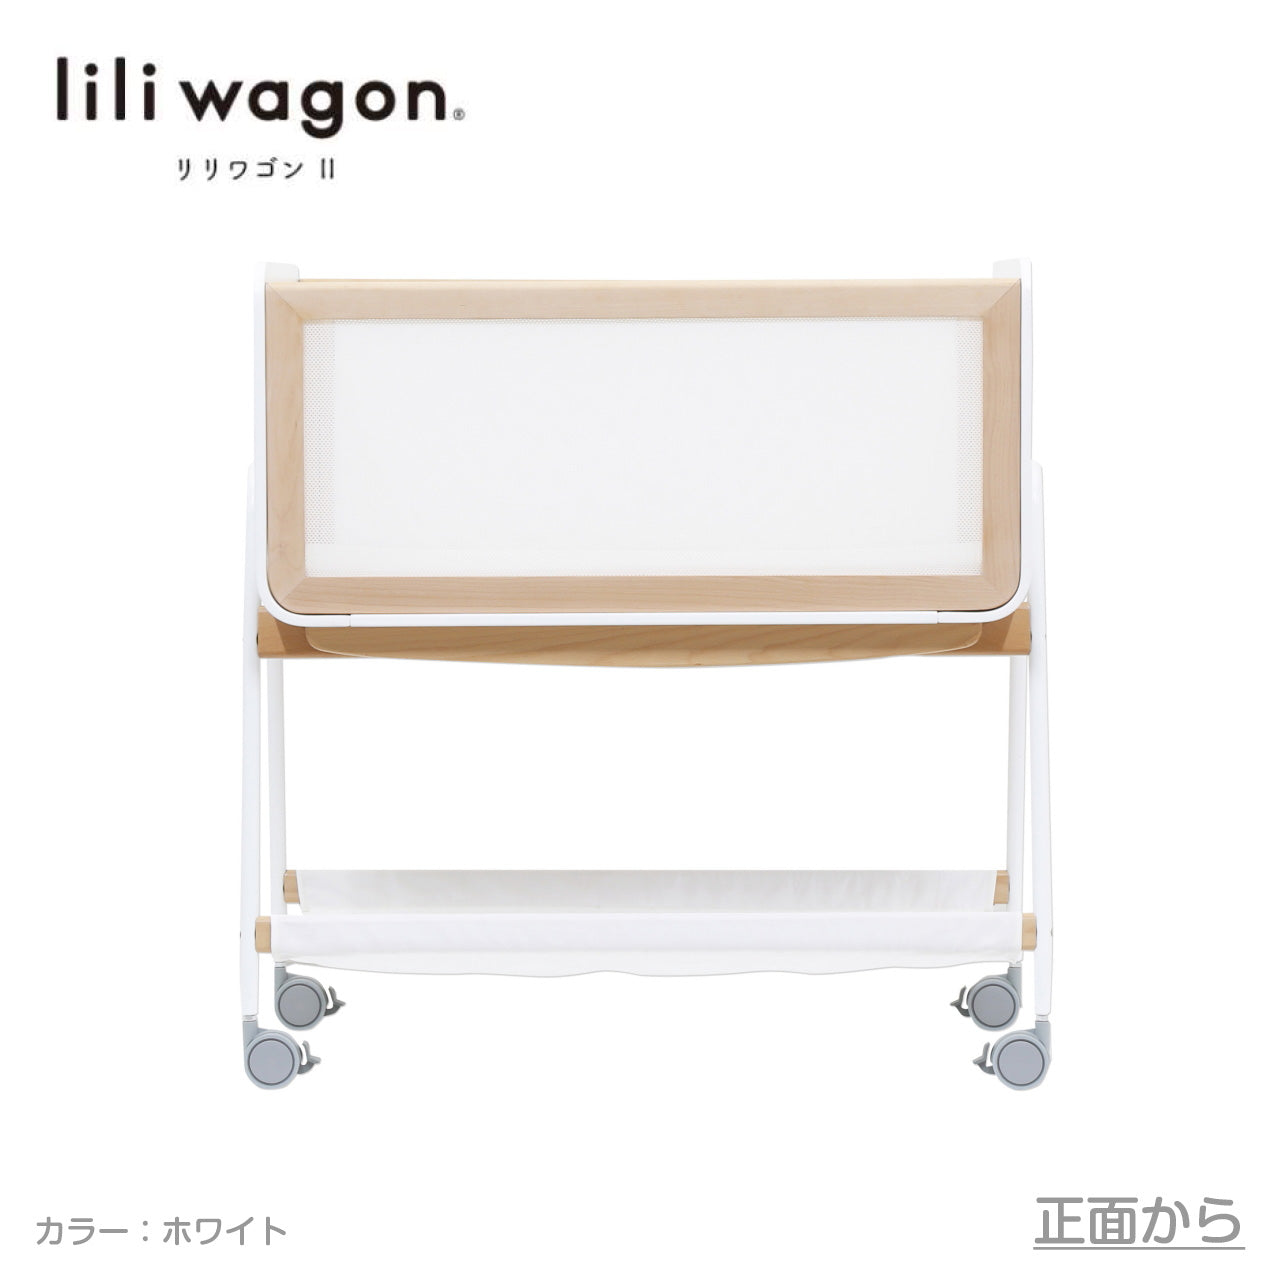 本州往復送料無料キャンペーン】【簡易ベッド人気No1】LiLi wagon